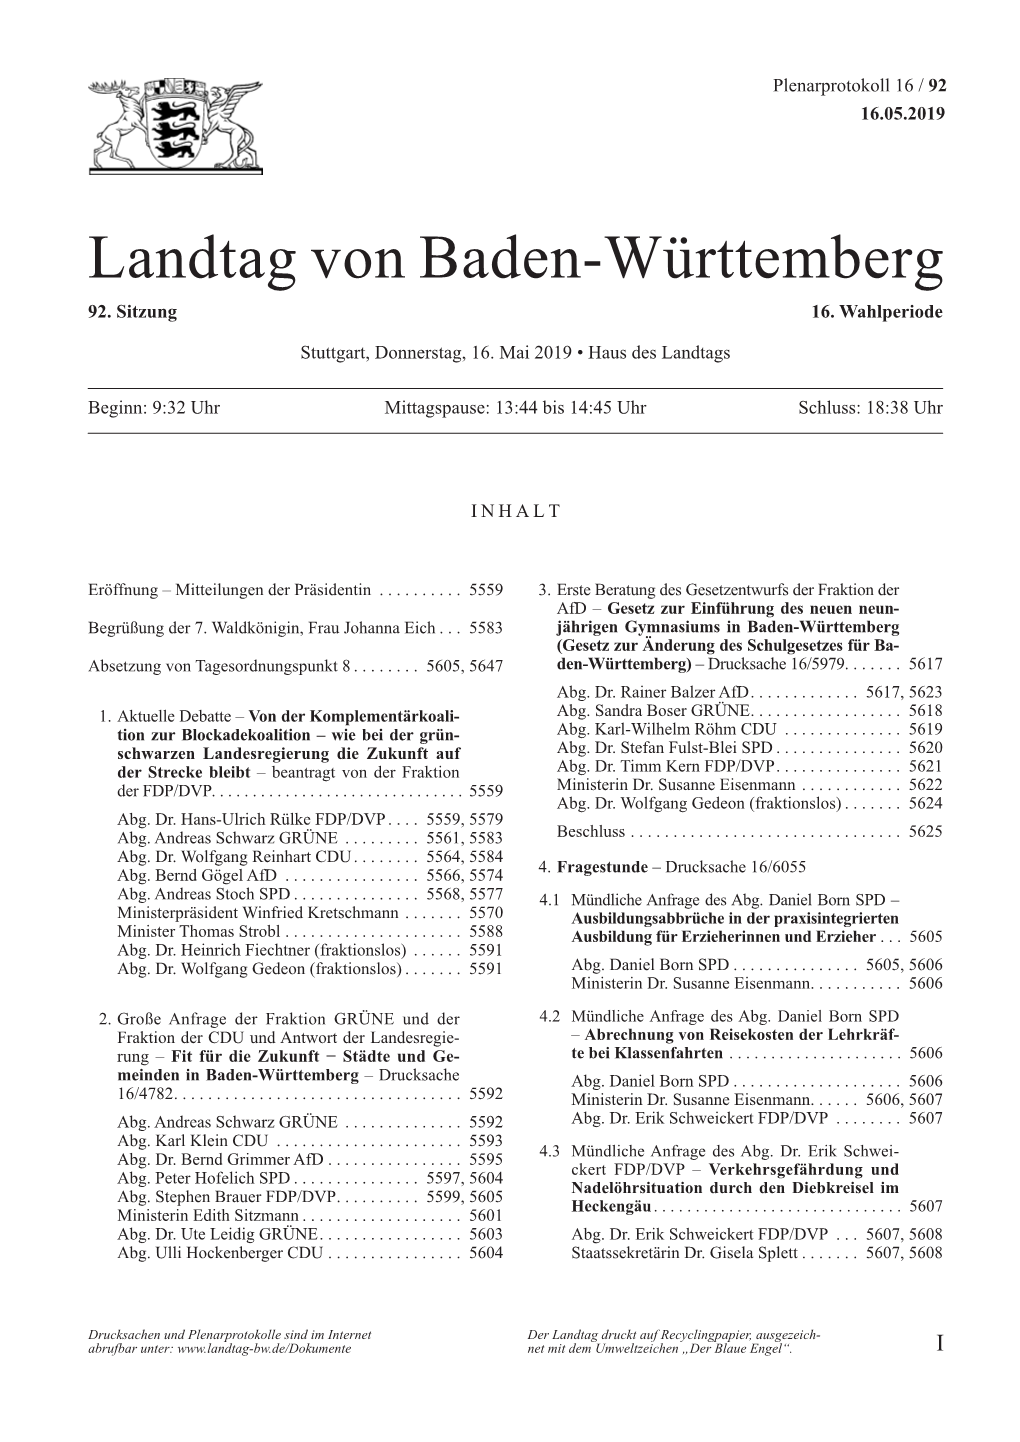 Landtag Von Baden-Württemberg 92